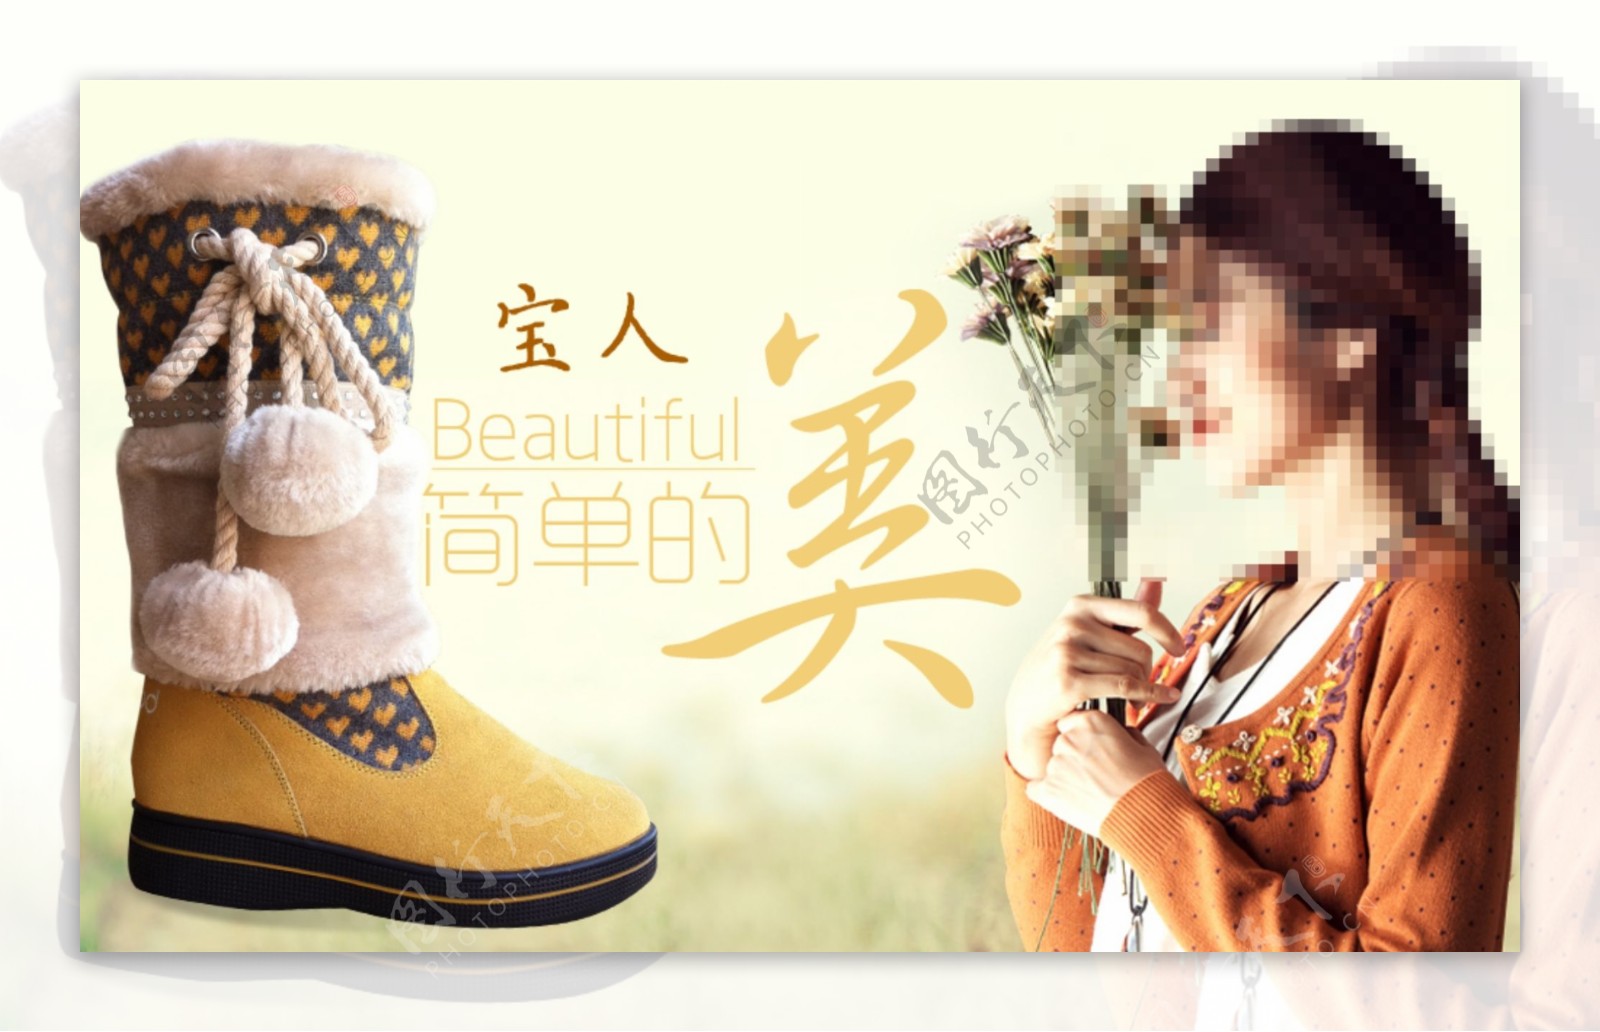 淘宝时尚女鞋宣传图素材下载